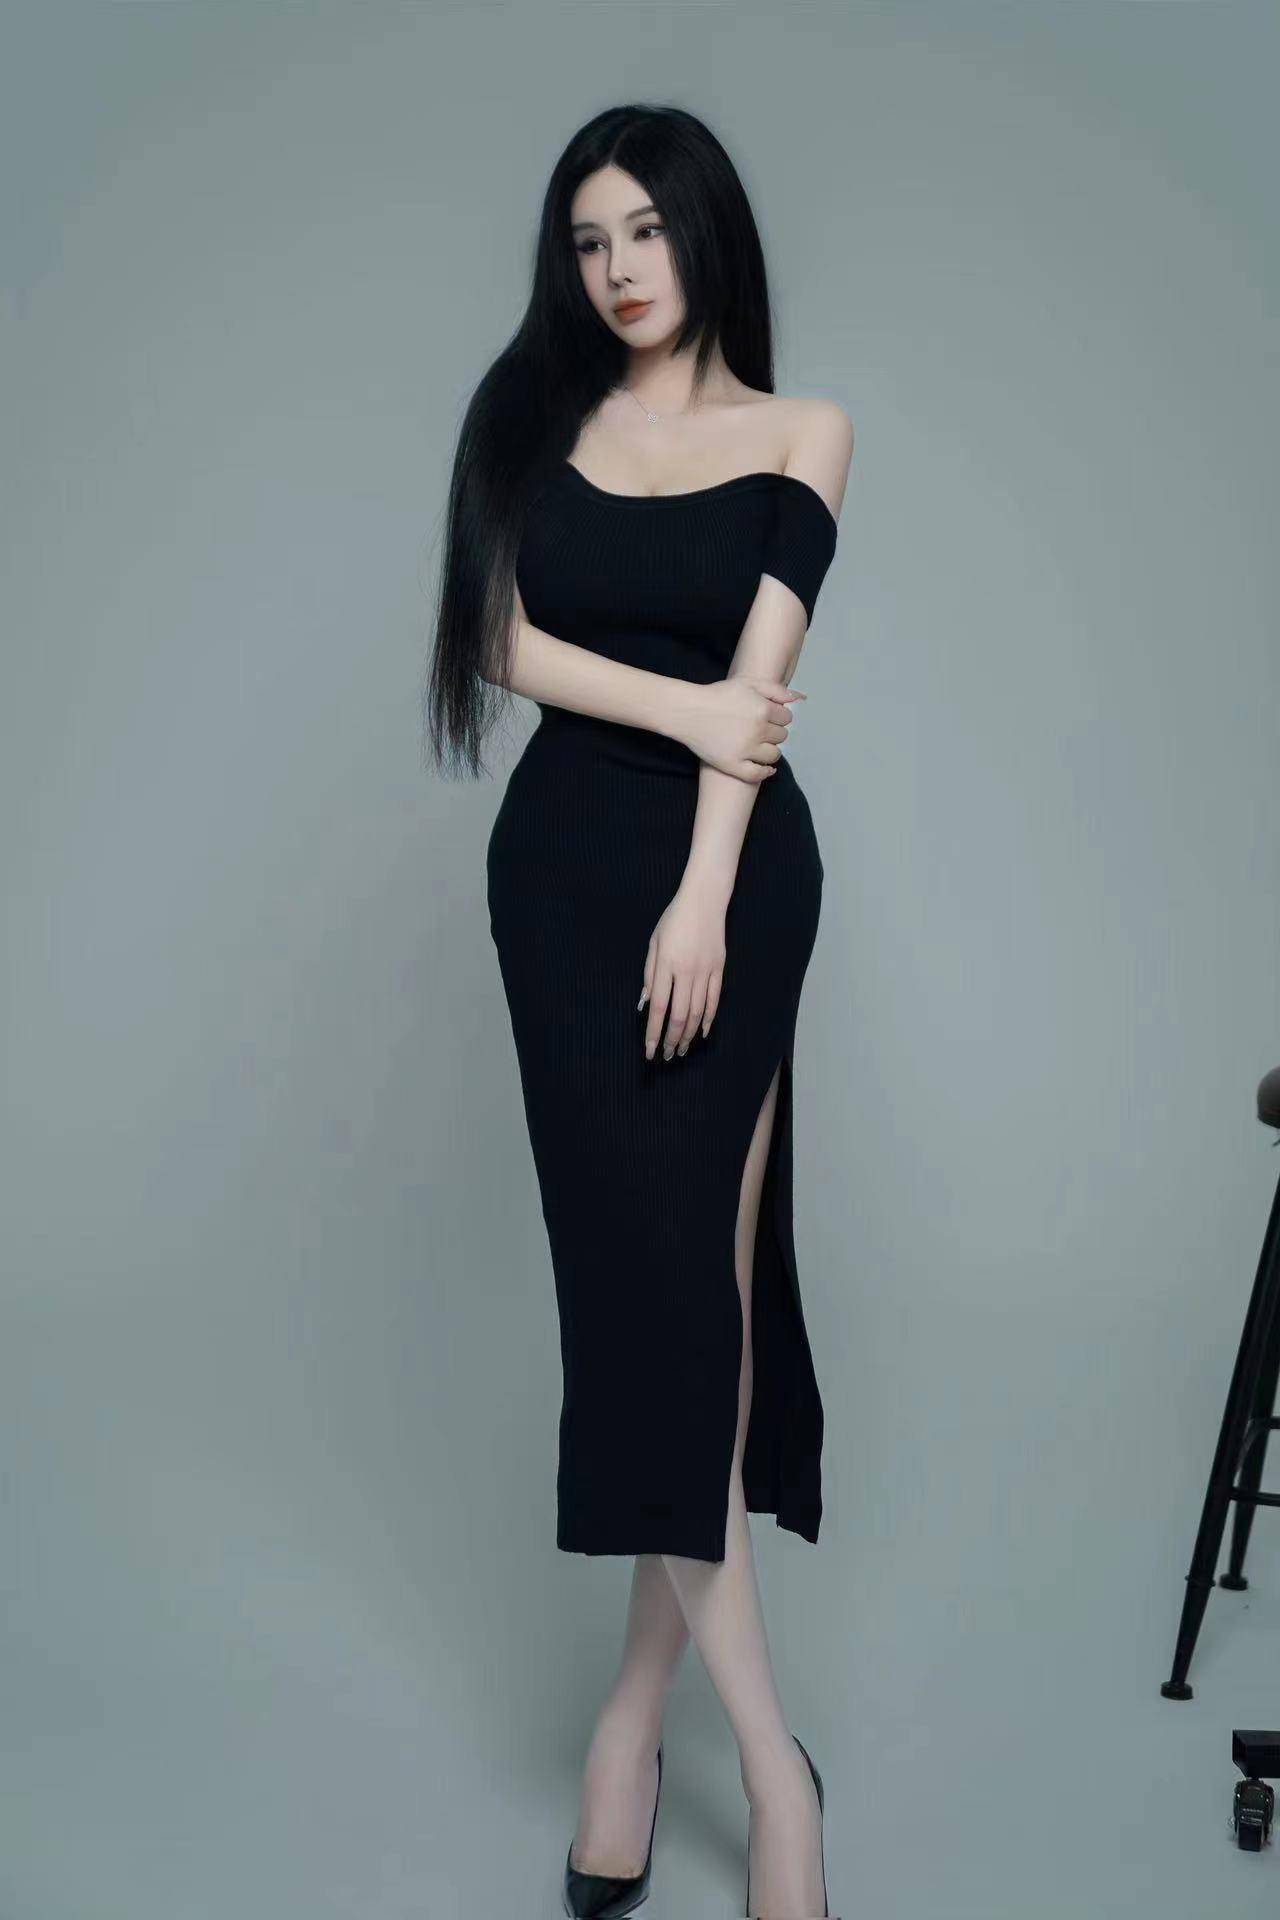 《时尚北京》杂志专访内地女歌手屈思琪:年夜饭是时代的印记与传统的